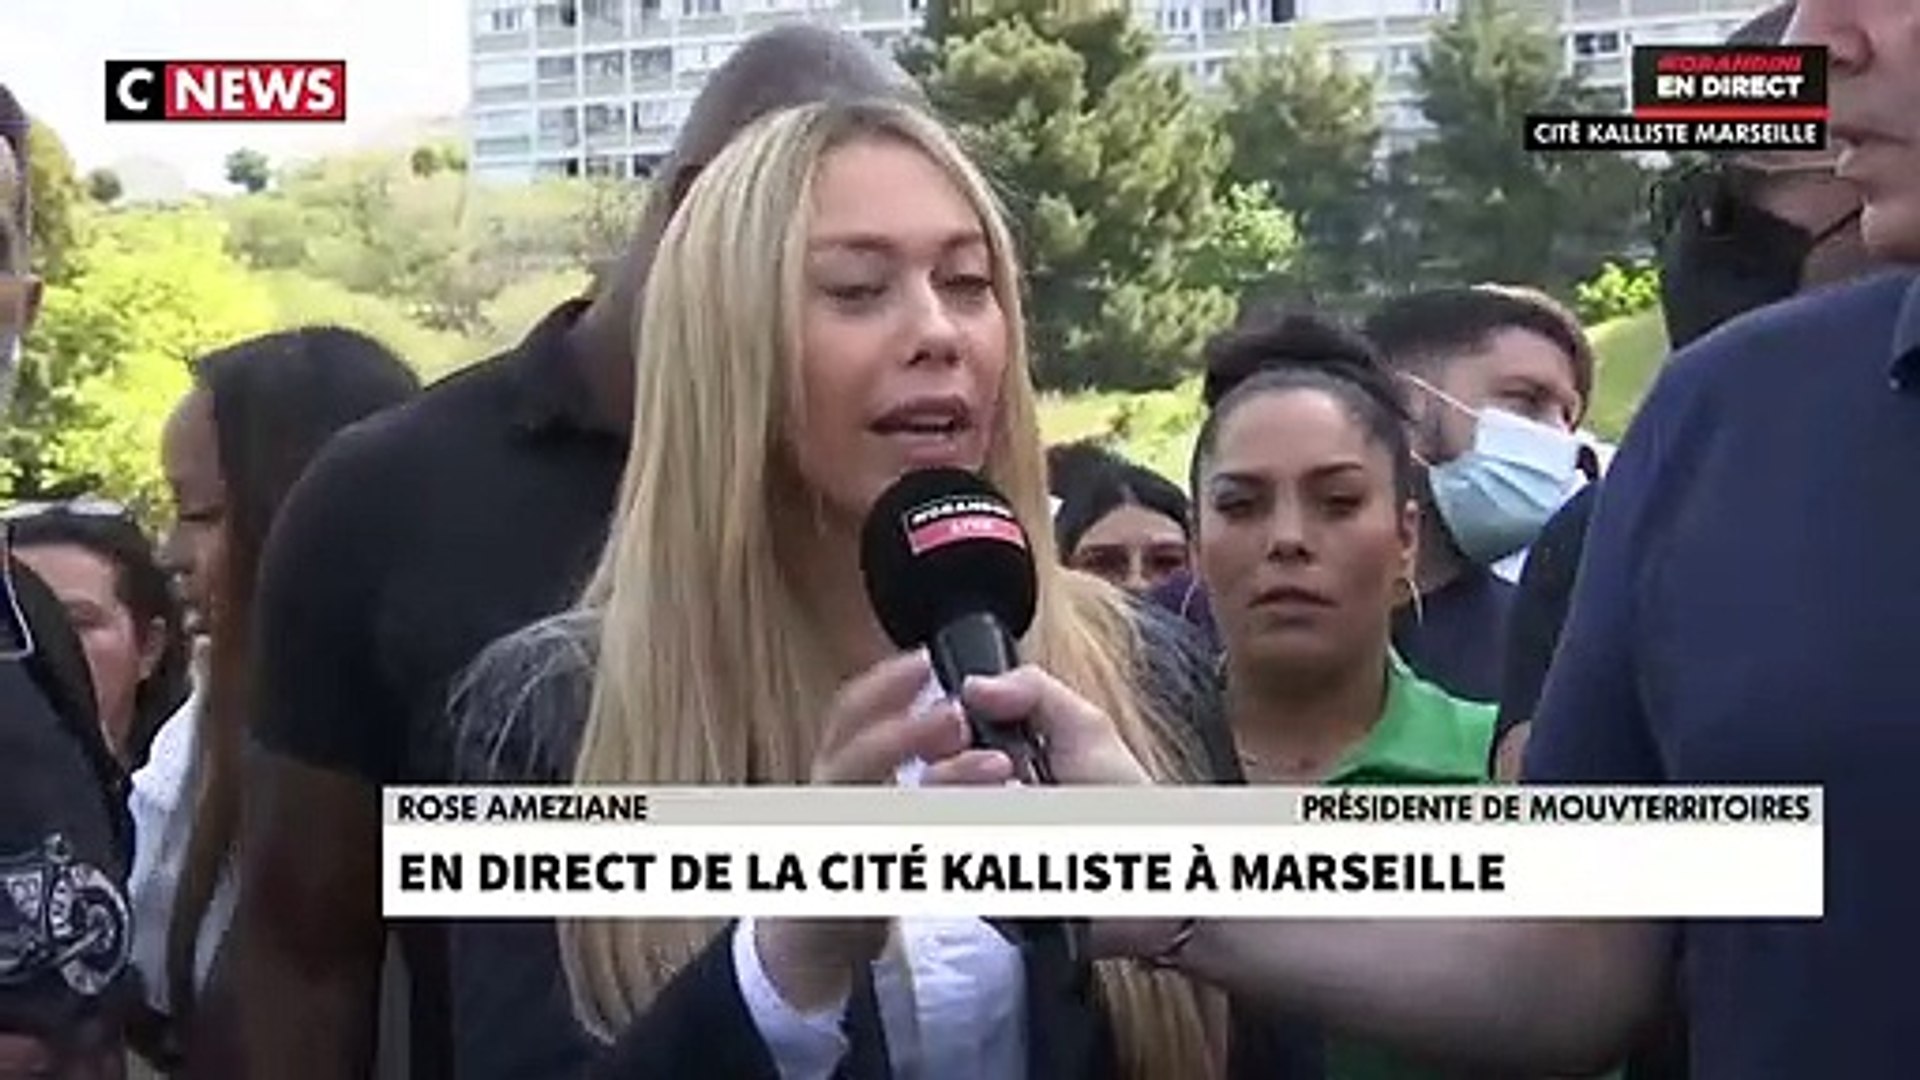 Morandini Live" en direct de la cité Kalliste à Marseille: Rose Ameziane,  présidente de Mouvterritoires, accuse en direct Samia Ghali de vivre sur  l'argent public depuis 20 ans et déclenche la colère